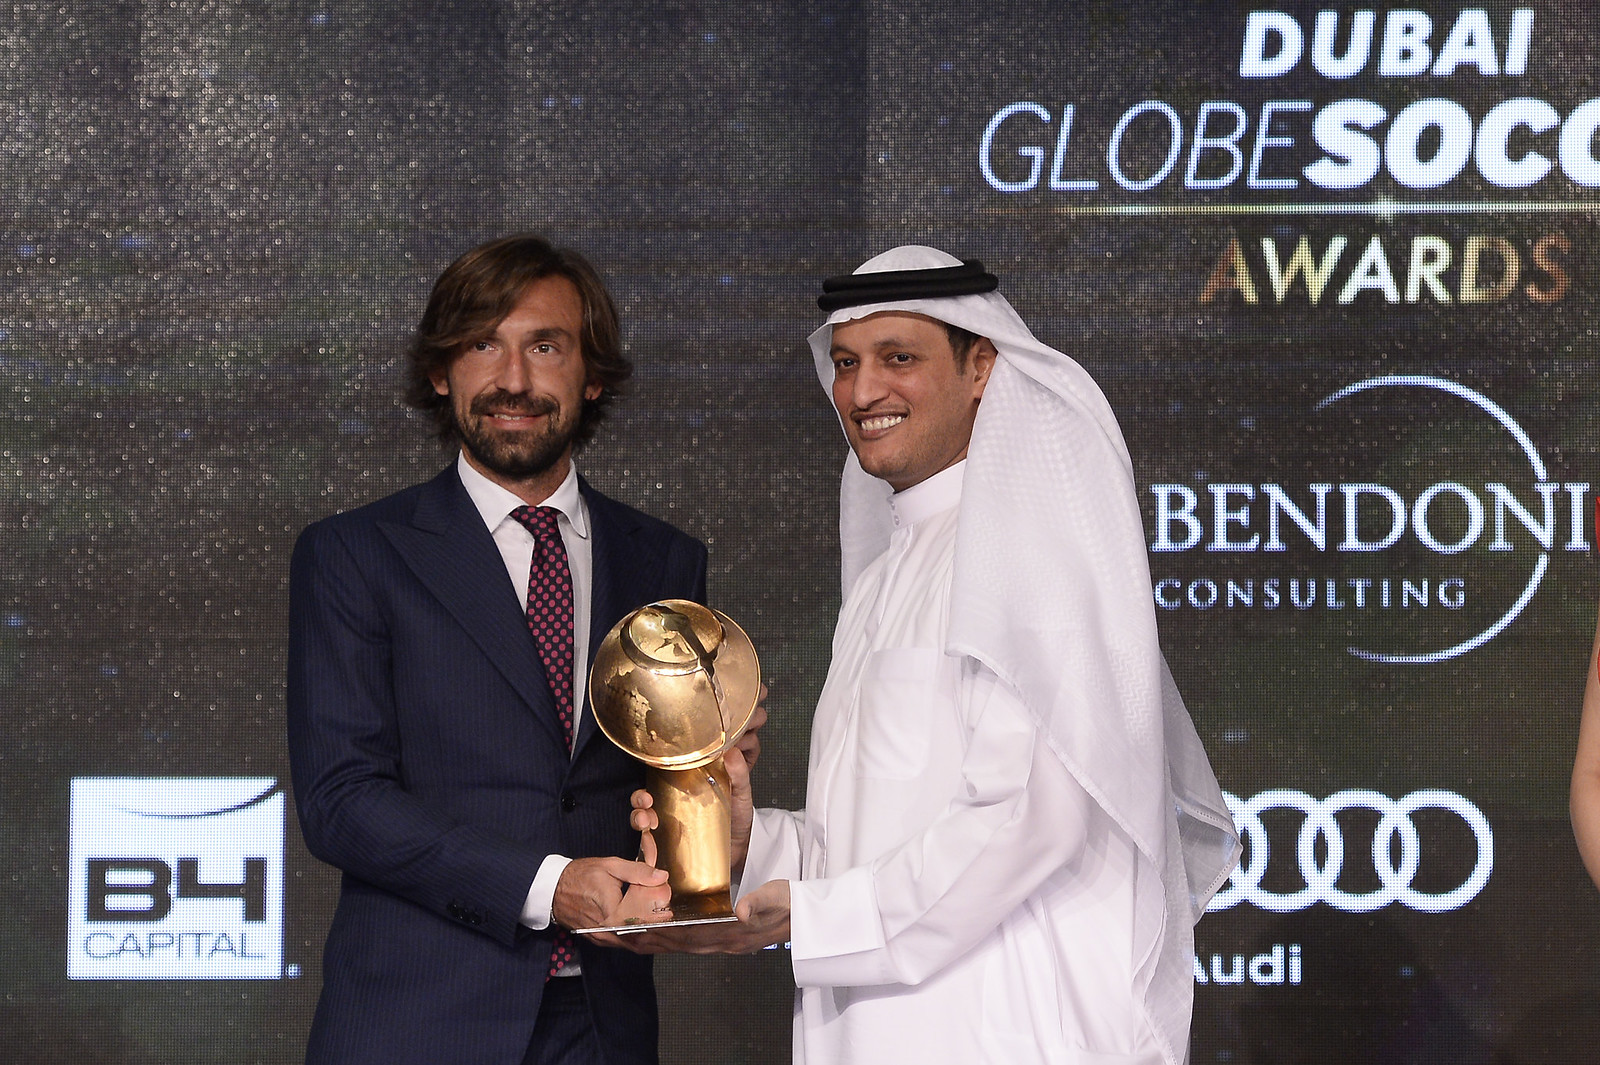 "Globe Soccer Award 2015"